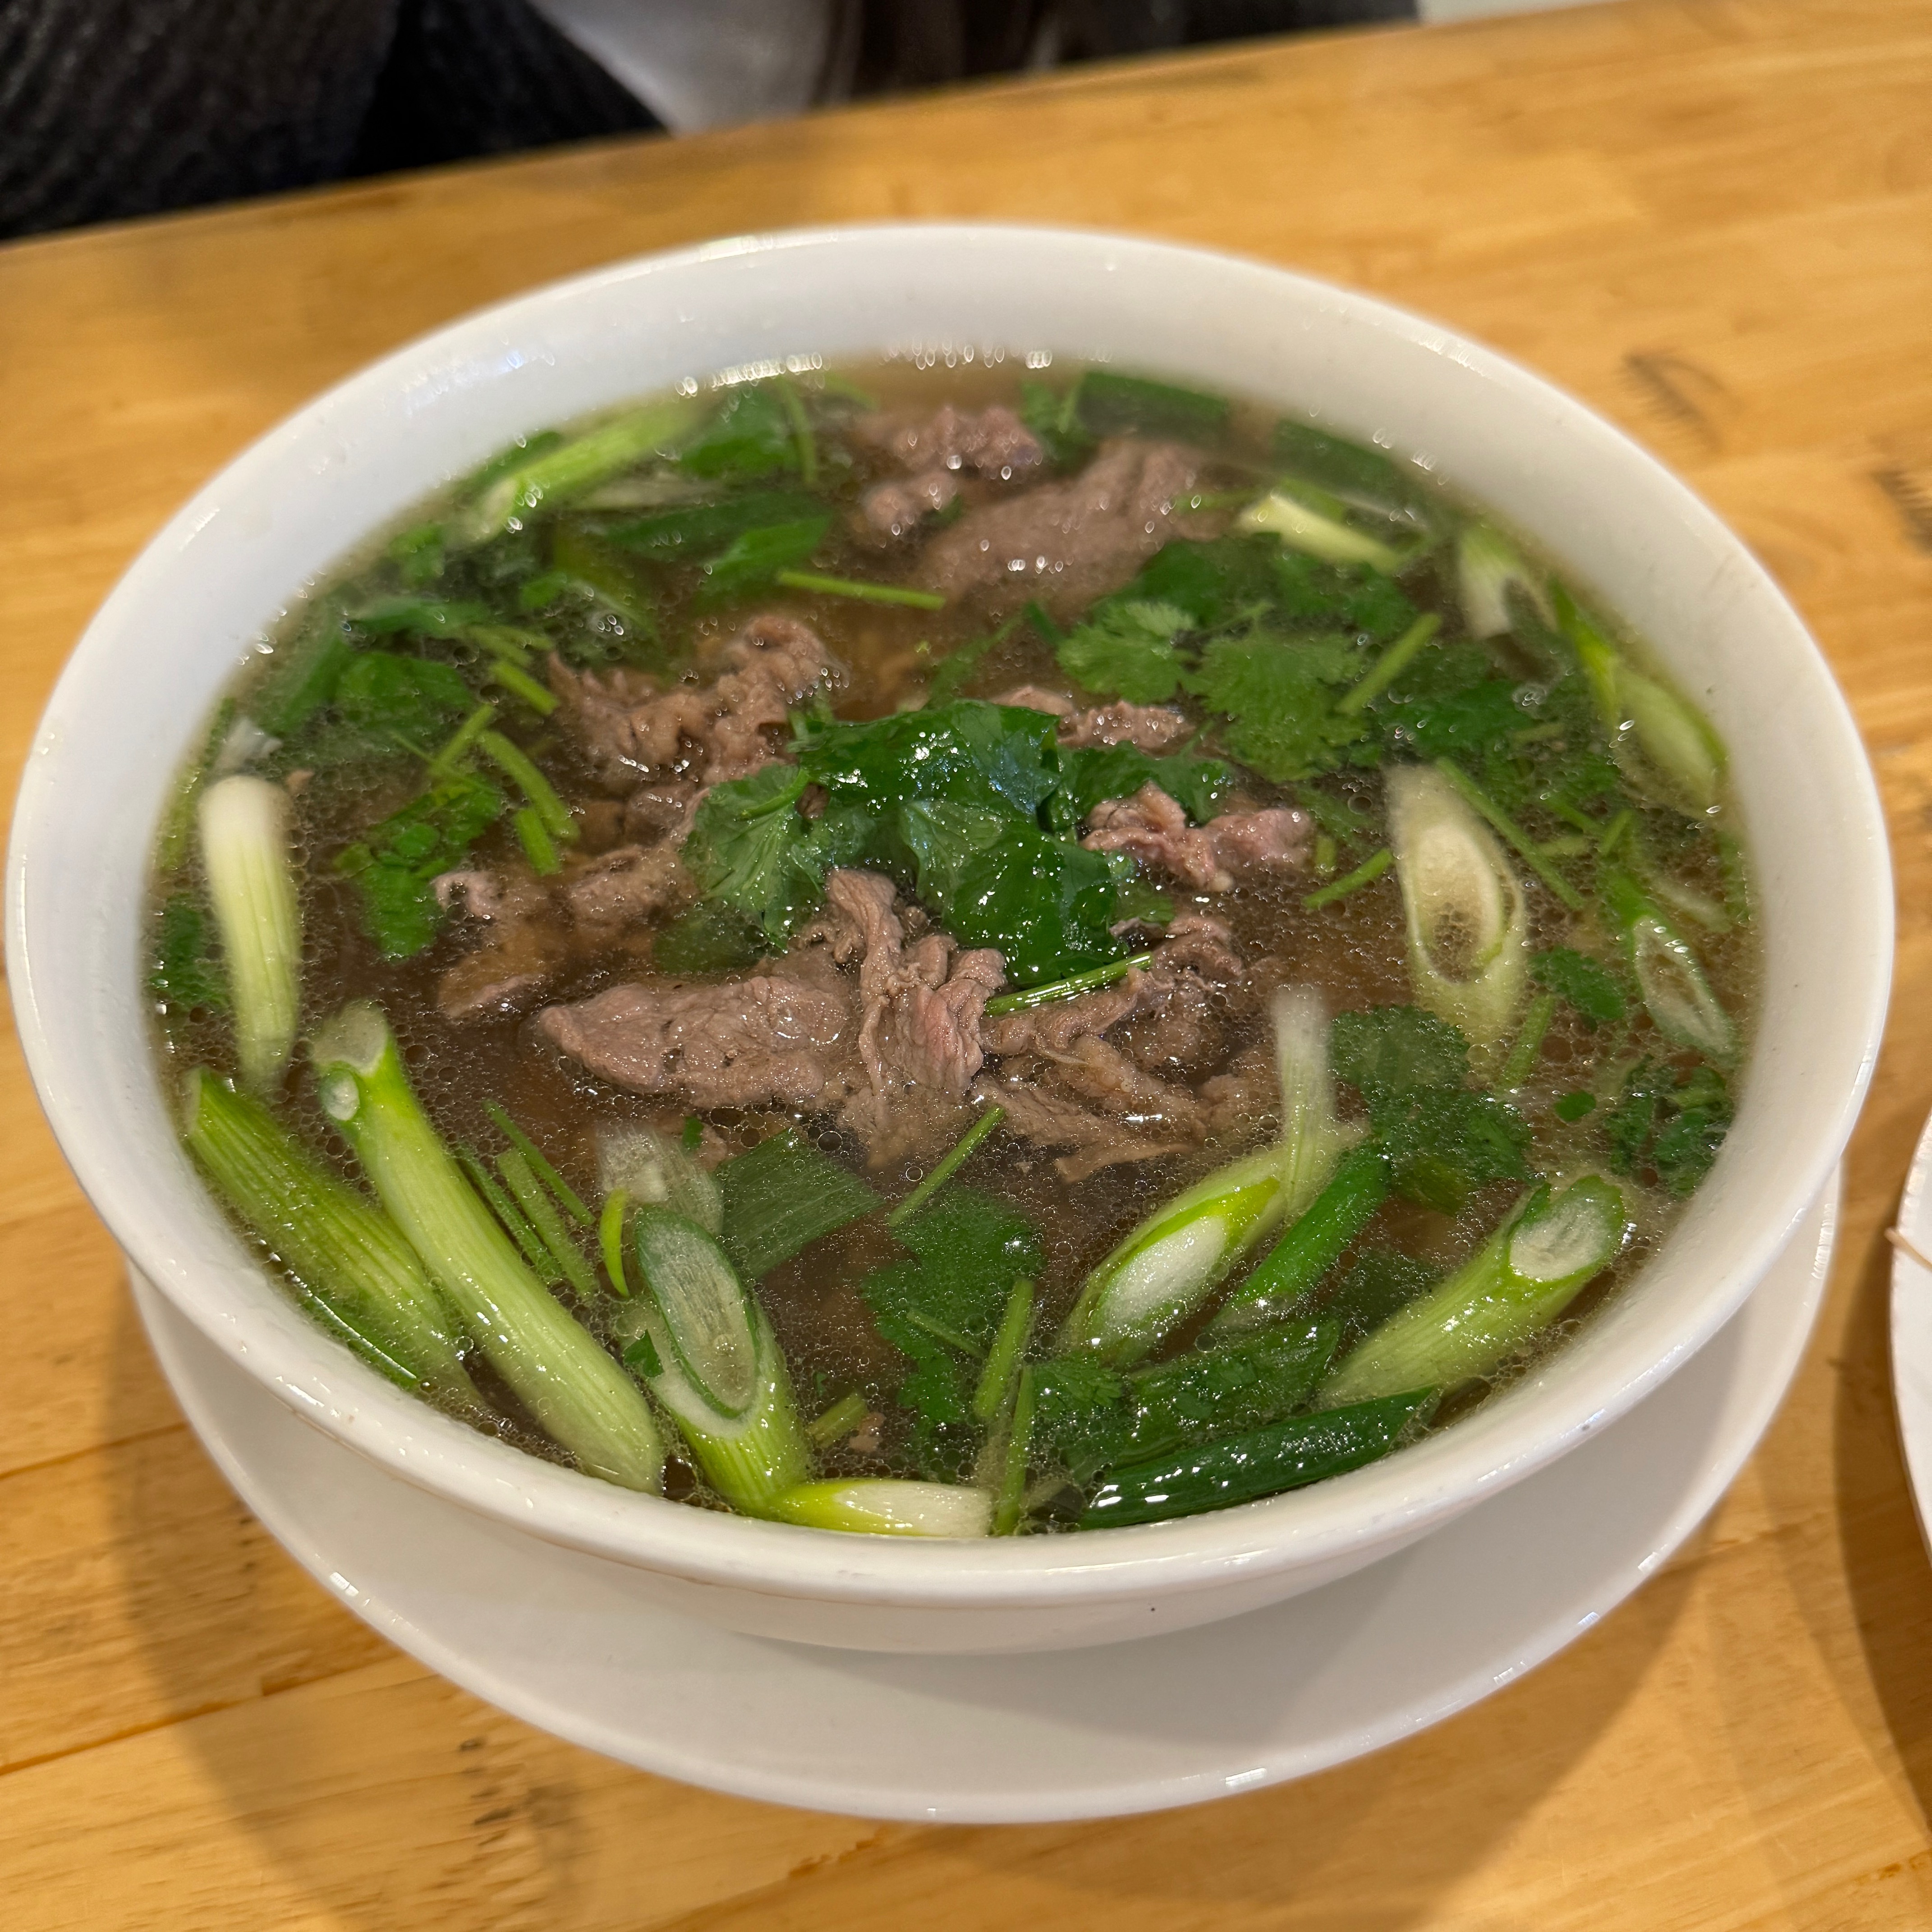 Pho Tai Lan Truyen Thong (Stir-fry Rare Beef) $16 from Phở Thìn 13 Lò Đúc (Pho Thin) on #foodmento http://foodmento.com/dish/56620